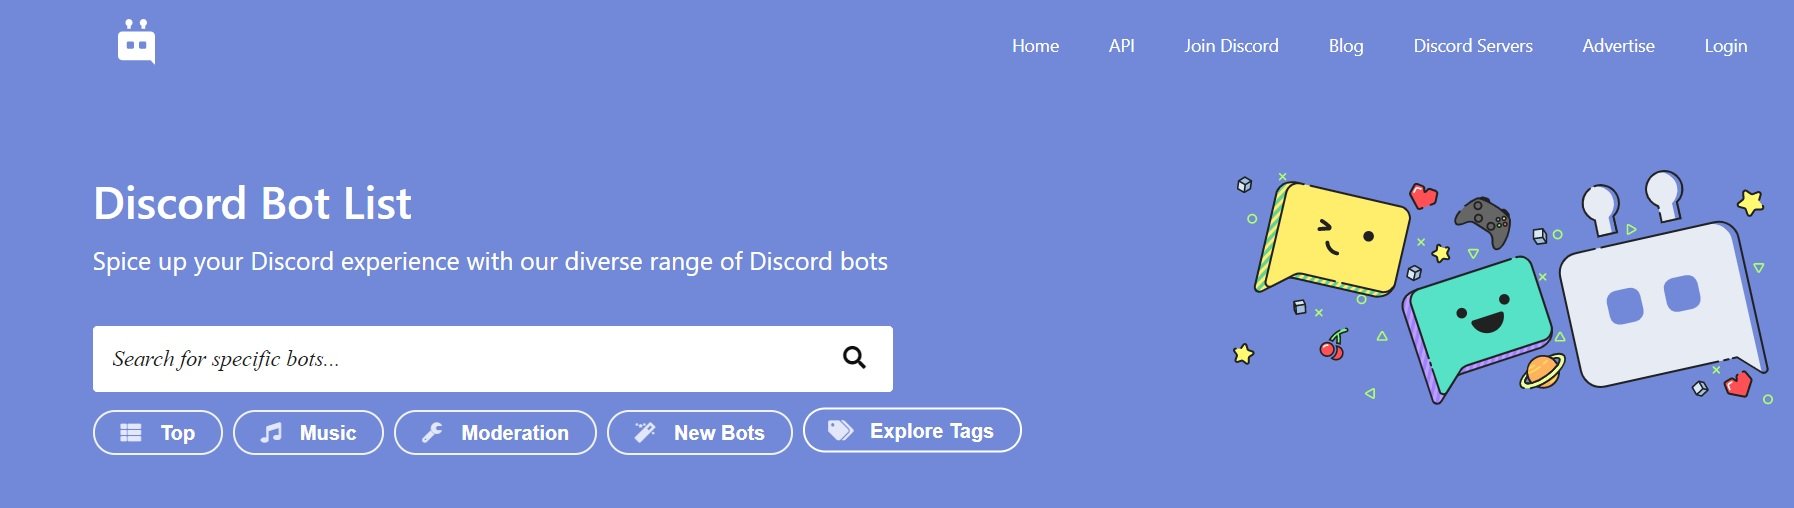 Visite o site Discord Bot List para encontrar o seu bot favorito